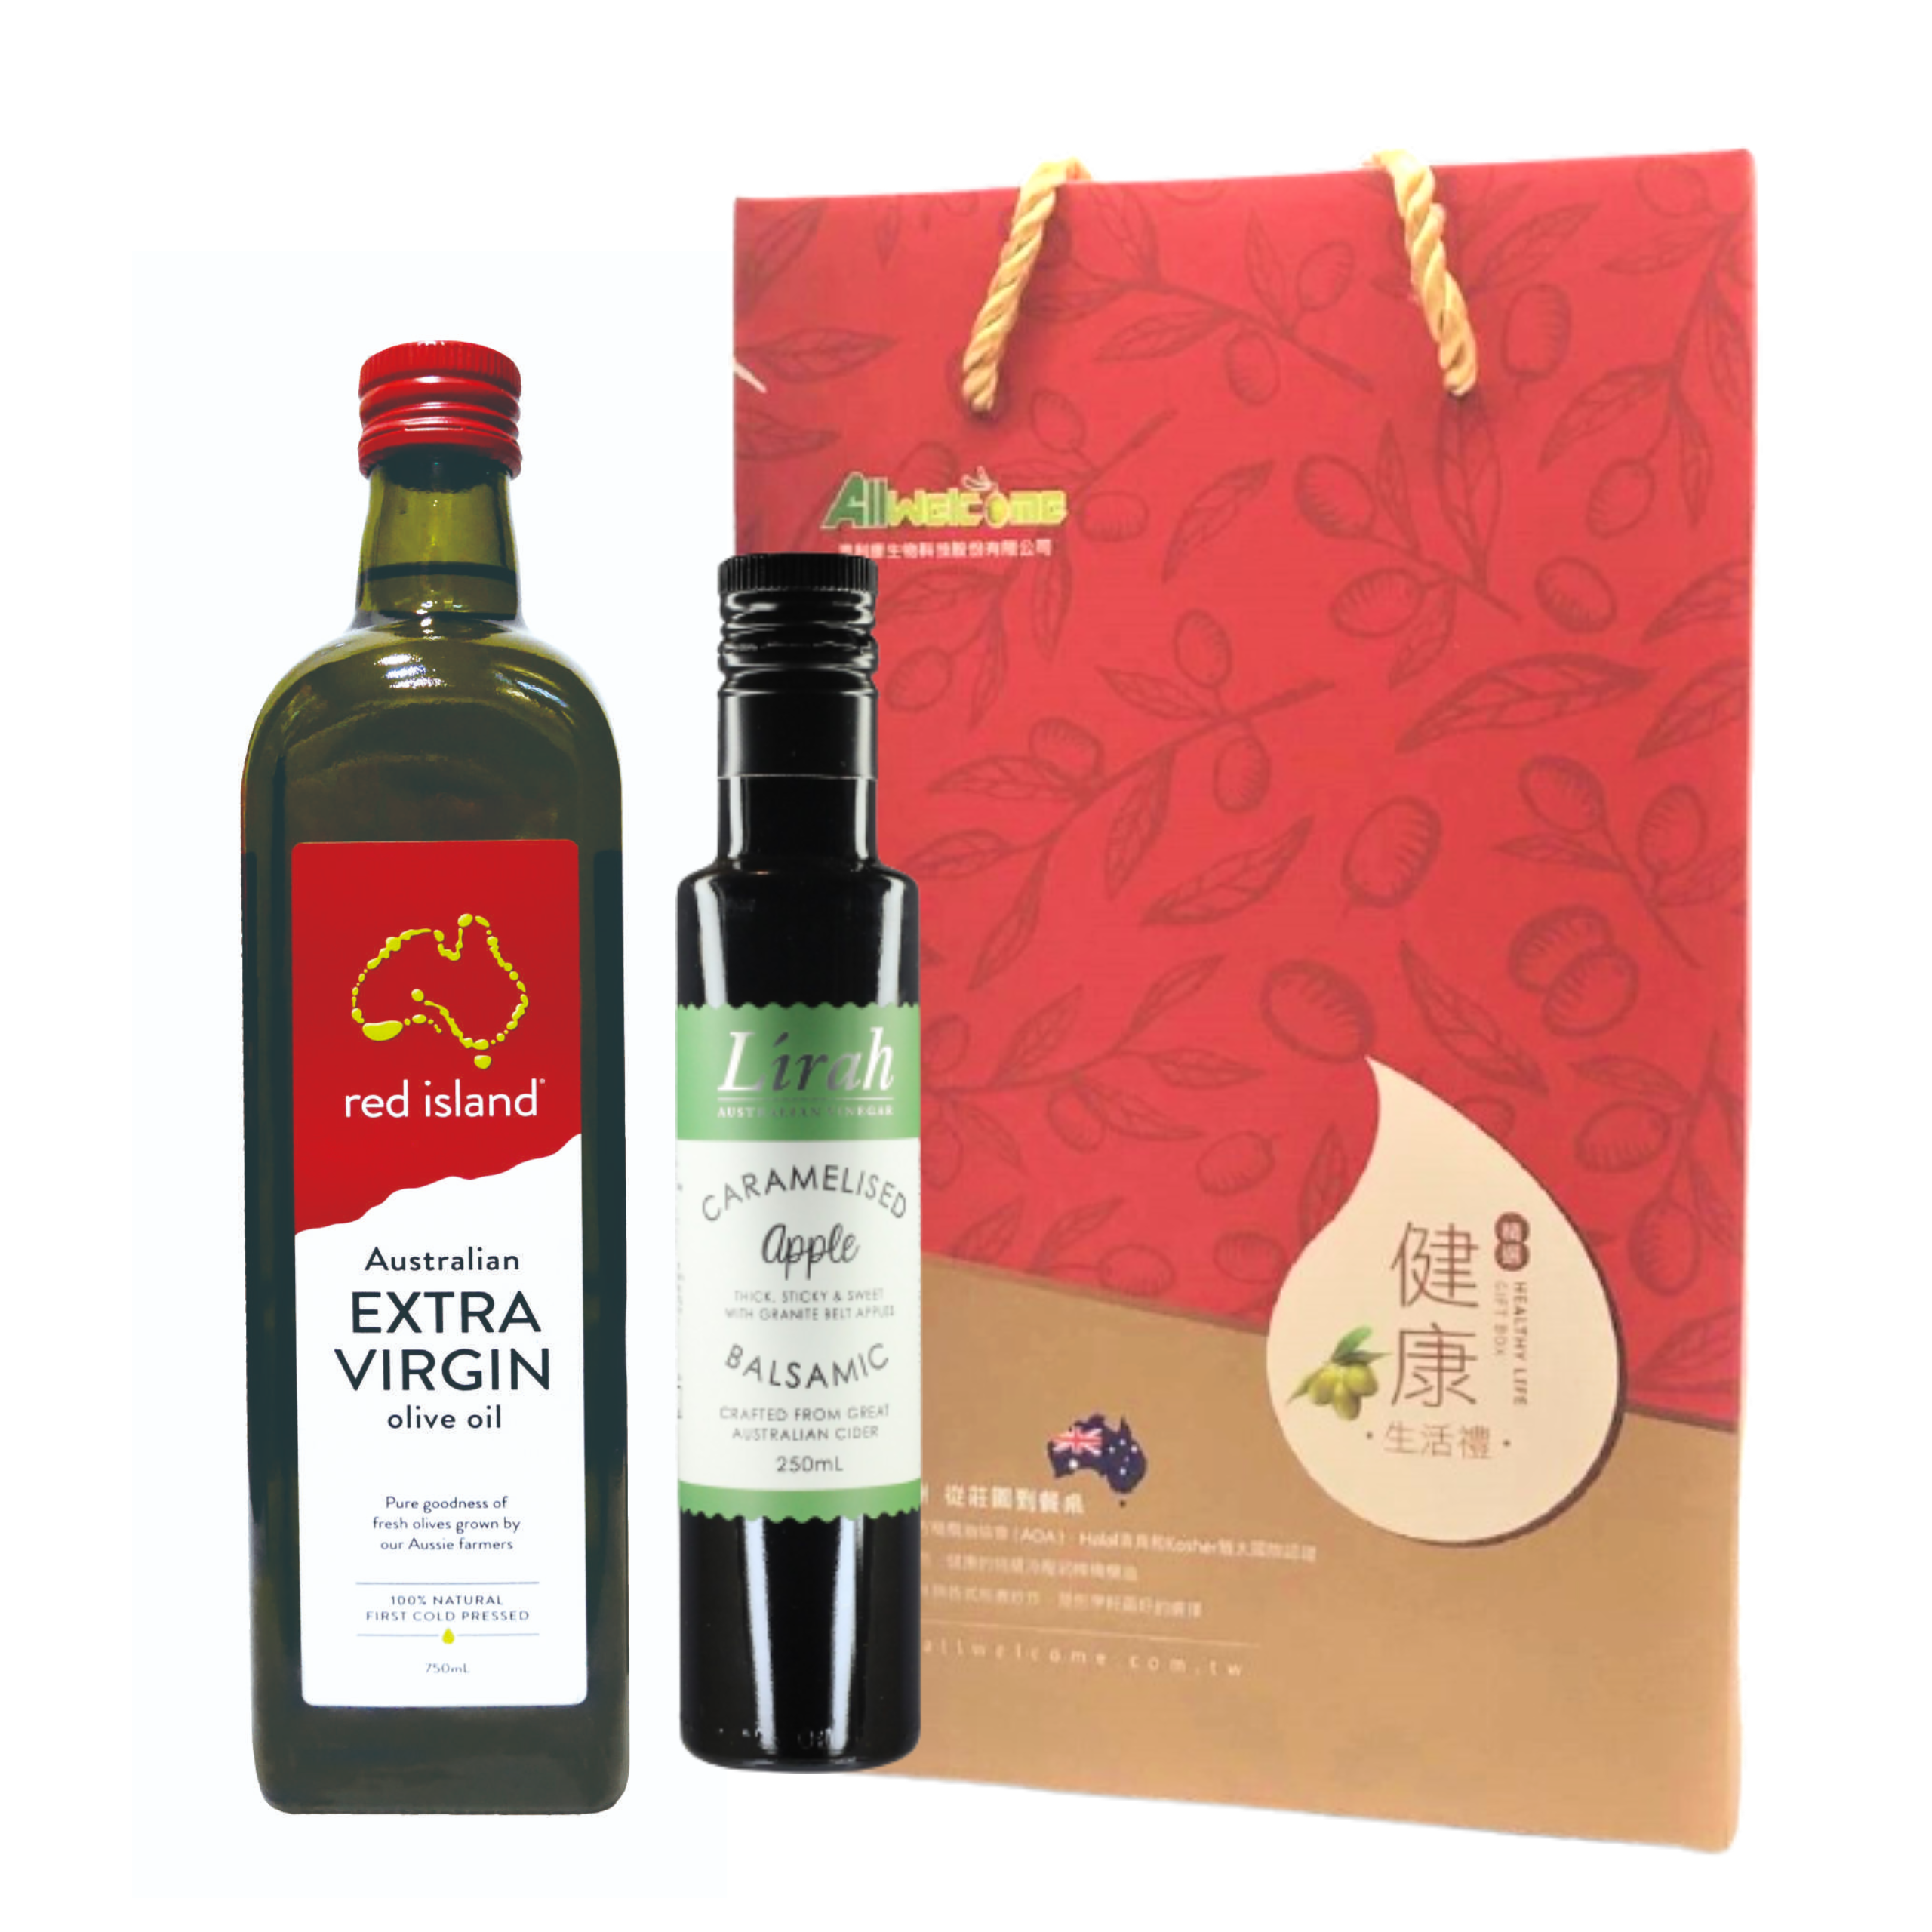 【油醋禮盒組】紅島750ml特級初榨橄欖油+Lirah巴薩米克醋-蘋果風味